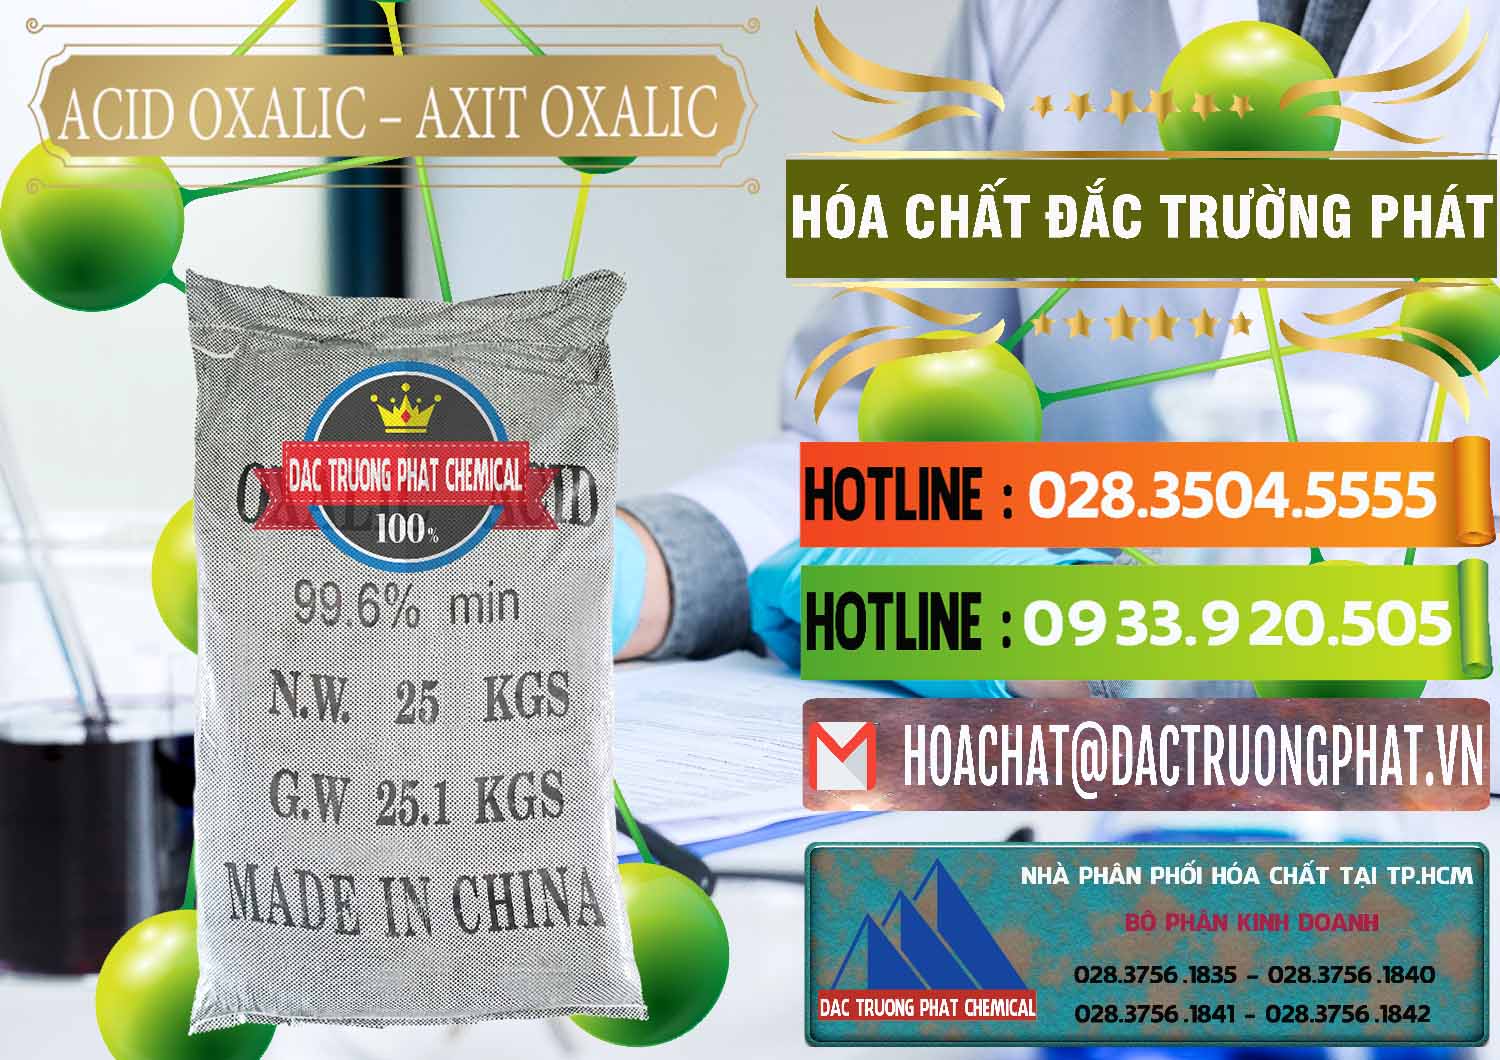 Nơi chuyên cung cấp và bán Acid Oxalic – Axit Oxalic 99.6% Trung Quốc China - 0014 - Cty chuyên phân phối ( nhập khẩu ) hóa chất tại TP.HCM - cungcaphoachat.com.vn